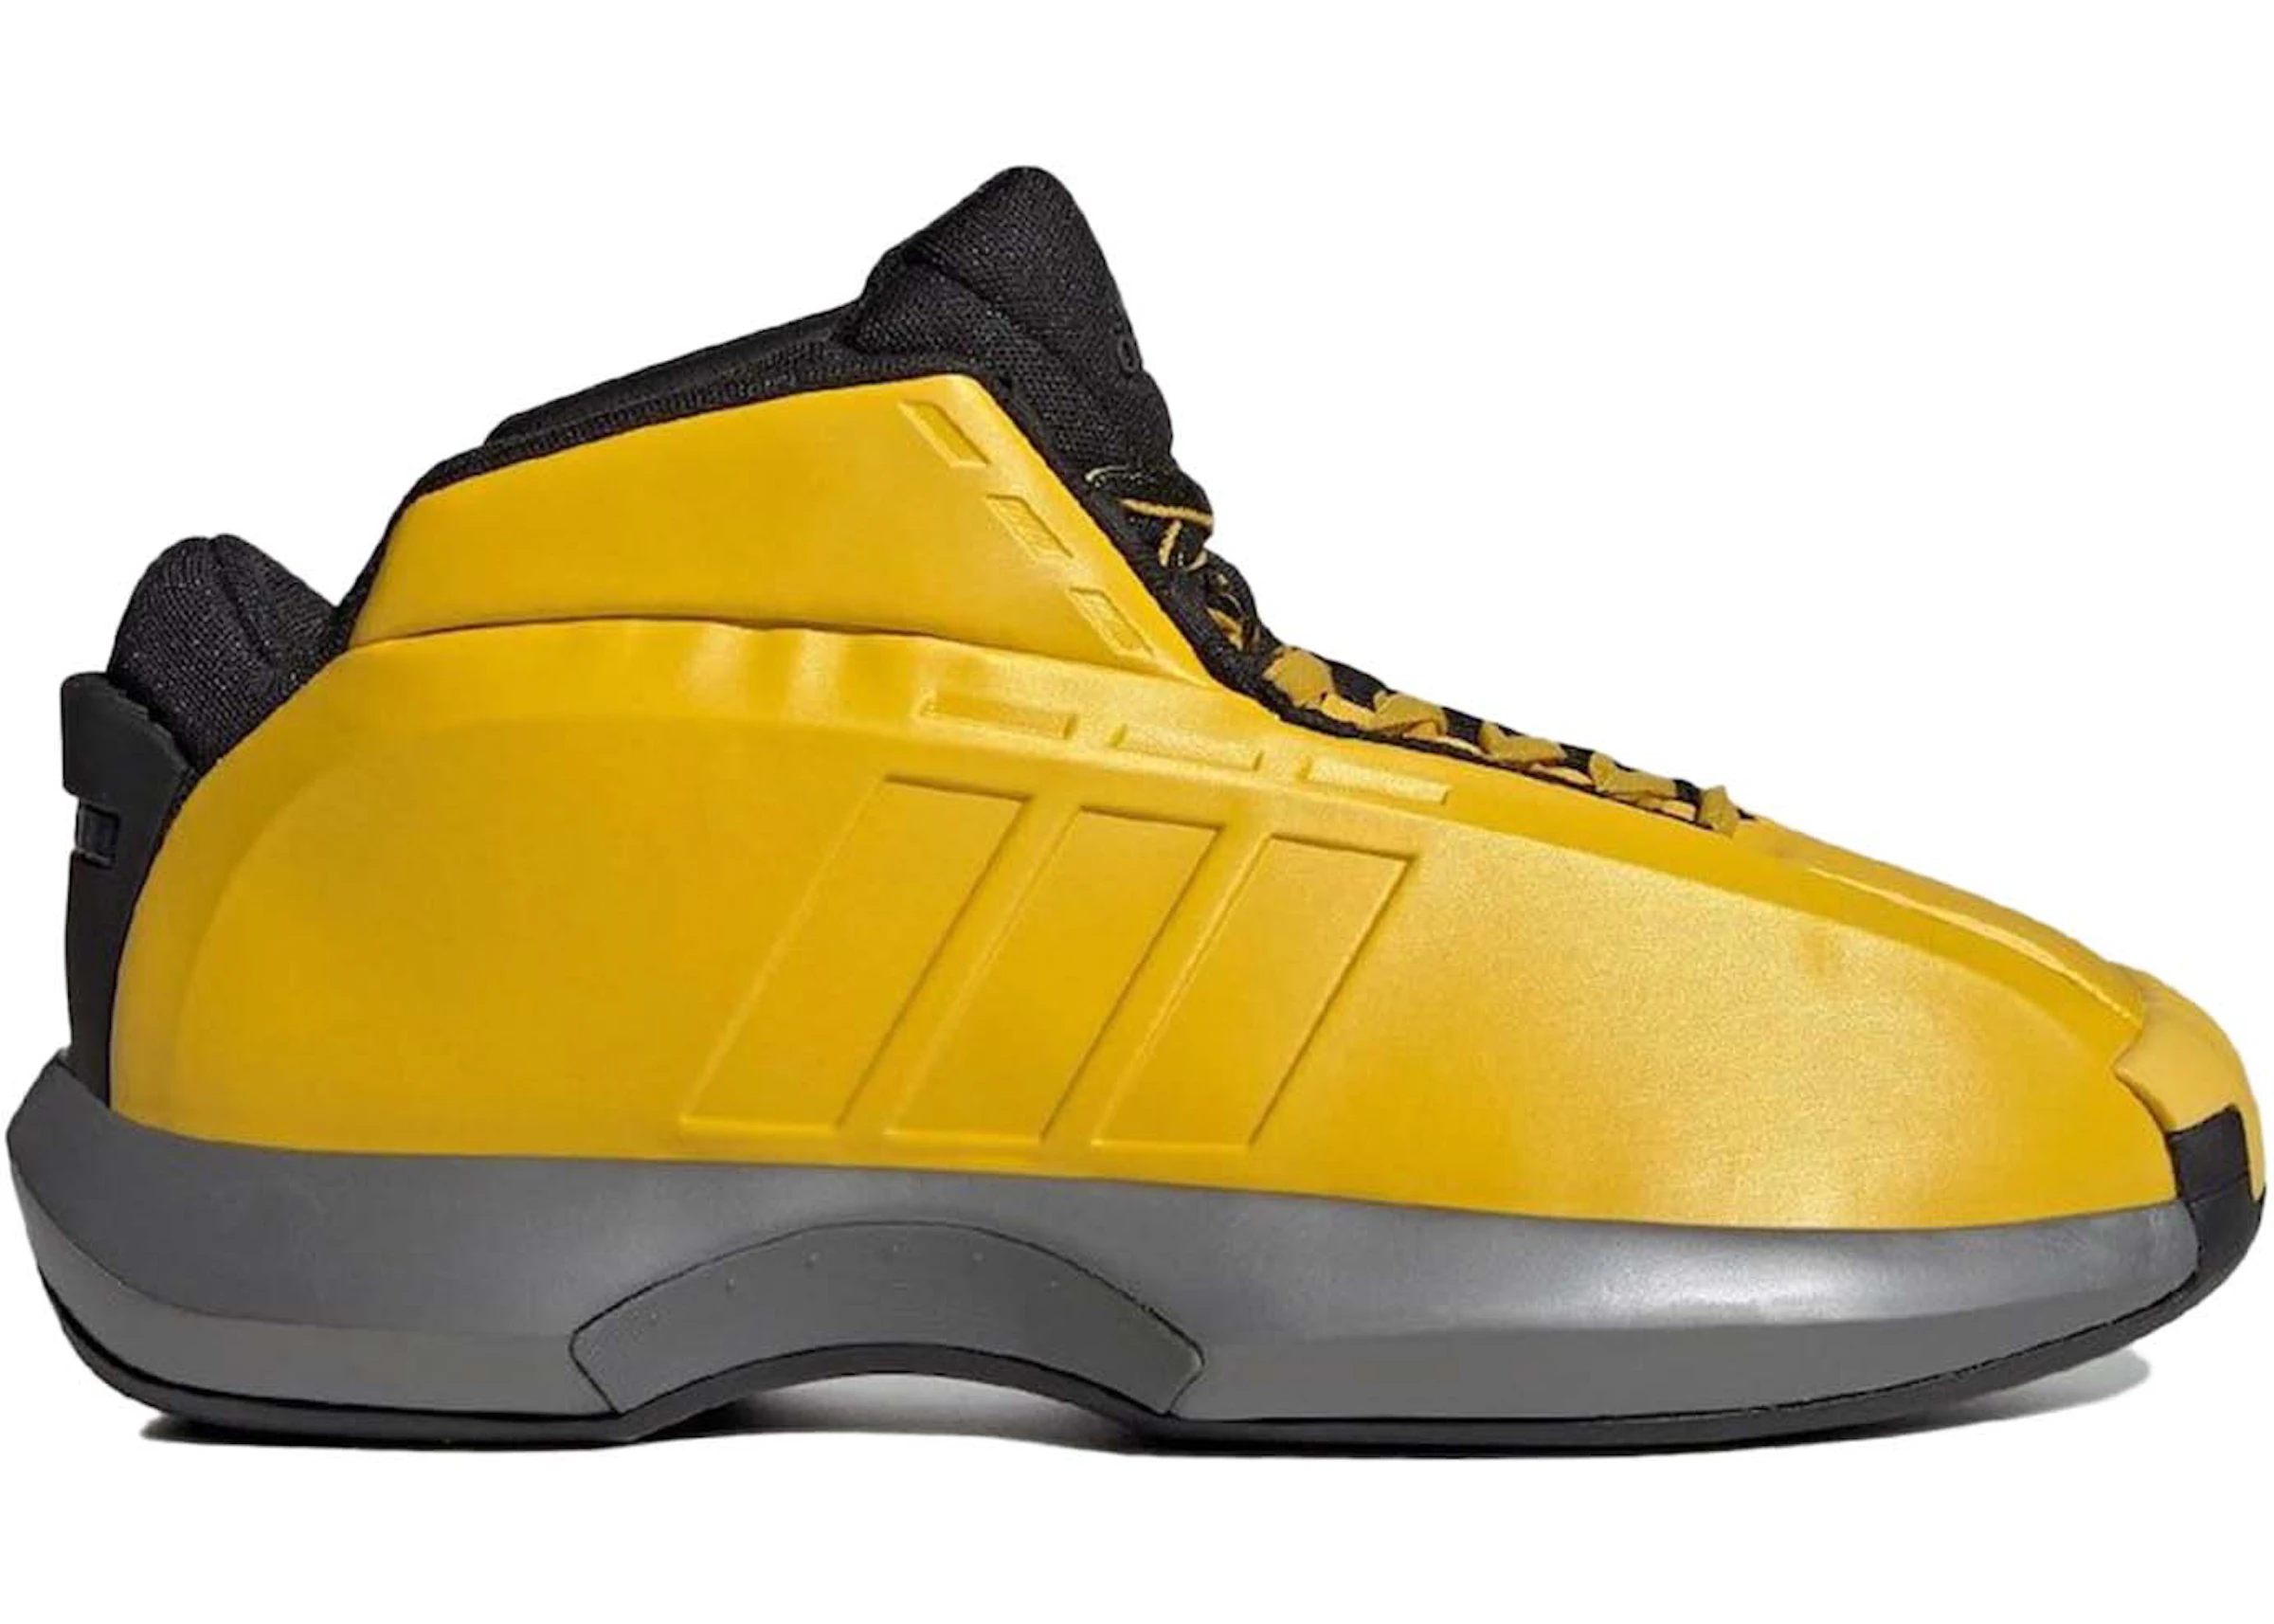 New Basketball Shoes Adidas | lupon.gov.ph